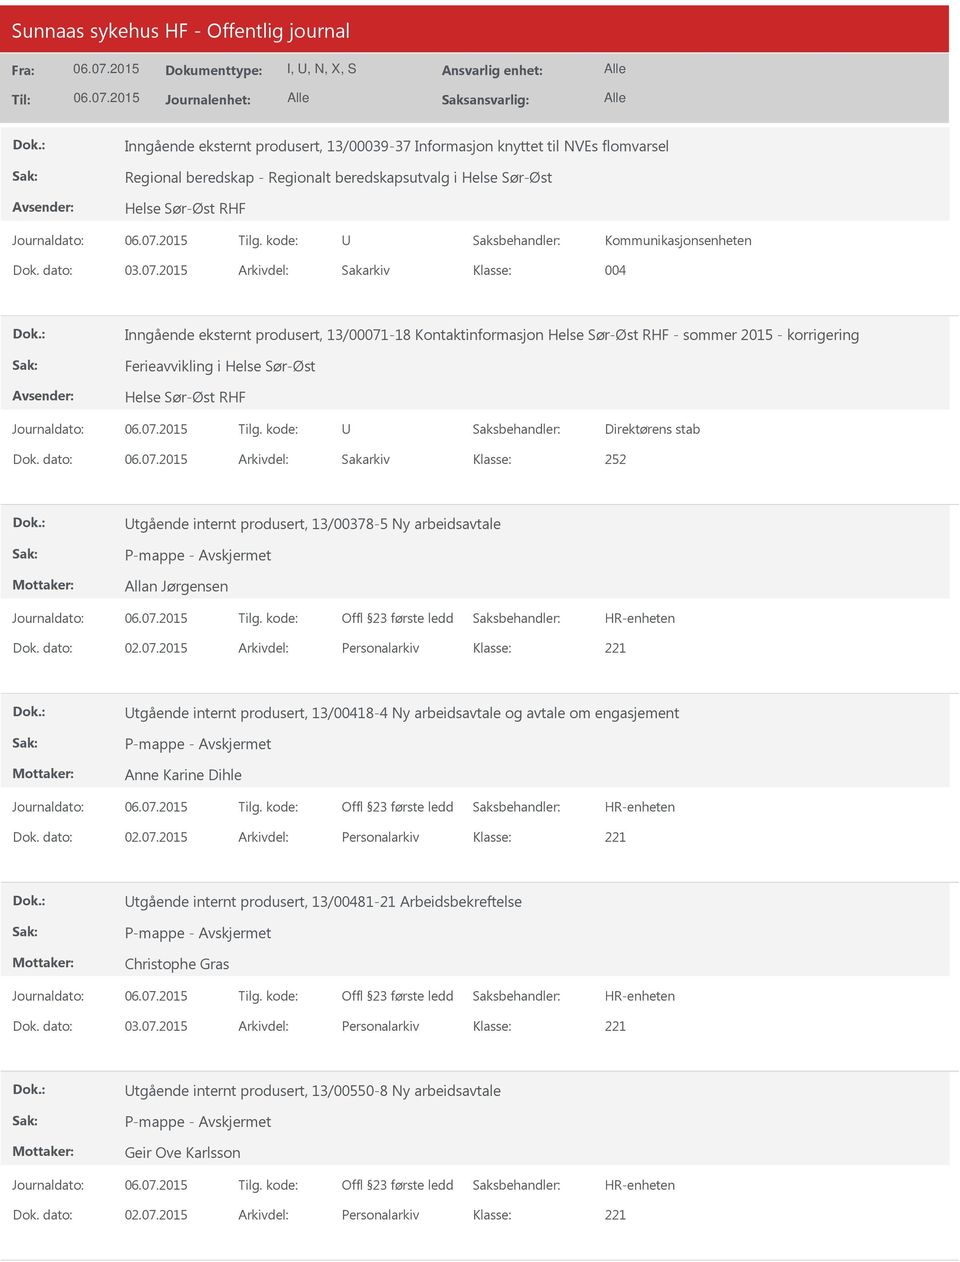 2015 Arkivdel: Sakarkiv 004 Inngående eksternt produsert, 13/00071-18 Kontaktinformasjon Helse Sør-Øst RHF - sommer 2015 - korrigering Ferieavvikling i Helse Sør-Øst Helse Sør-Øst RHF Direktørens